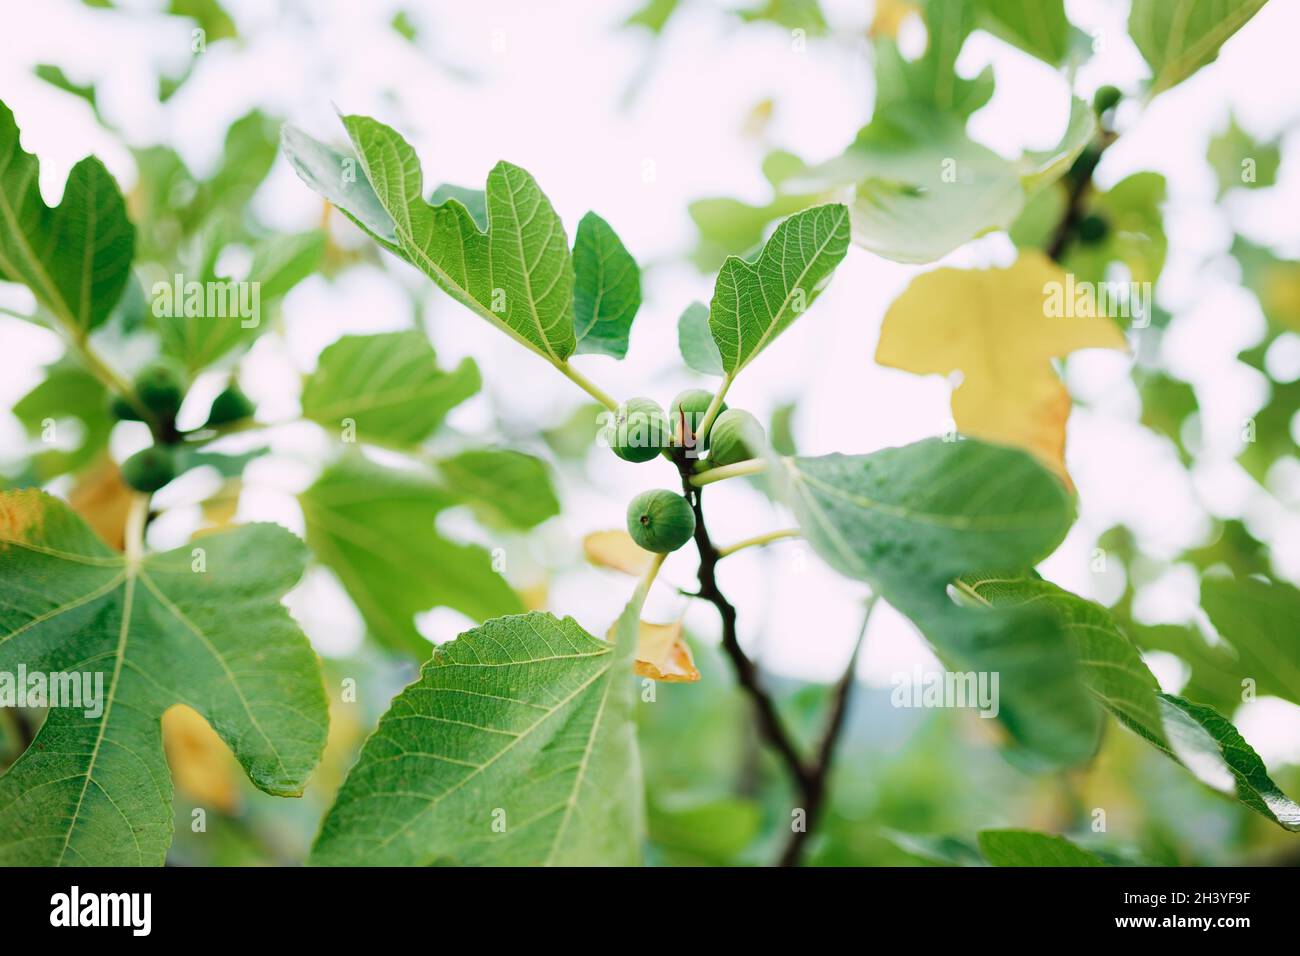 Primo piano di fichi verdi su rami di alberi, tra foglie di autunno gialle e verdi. Foto Stock